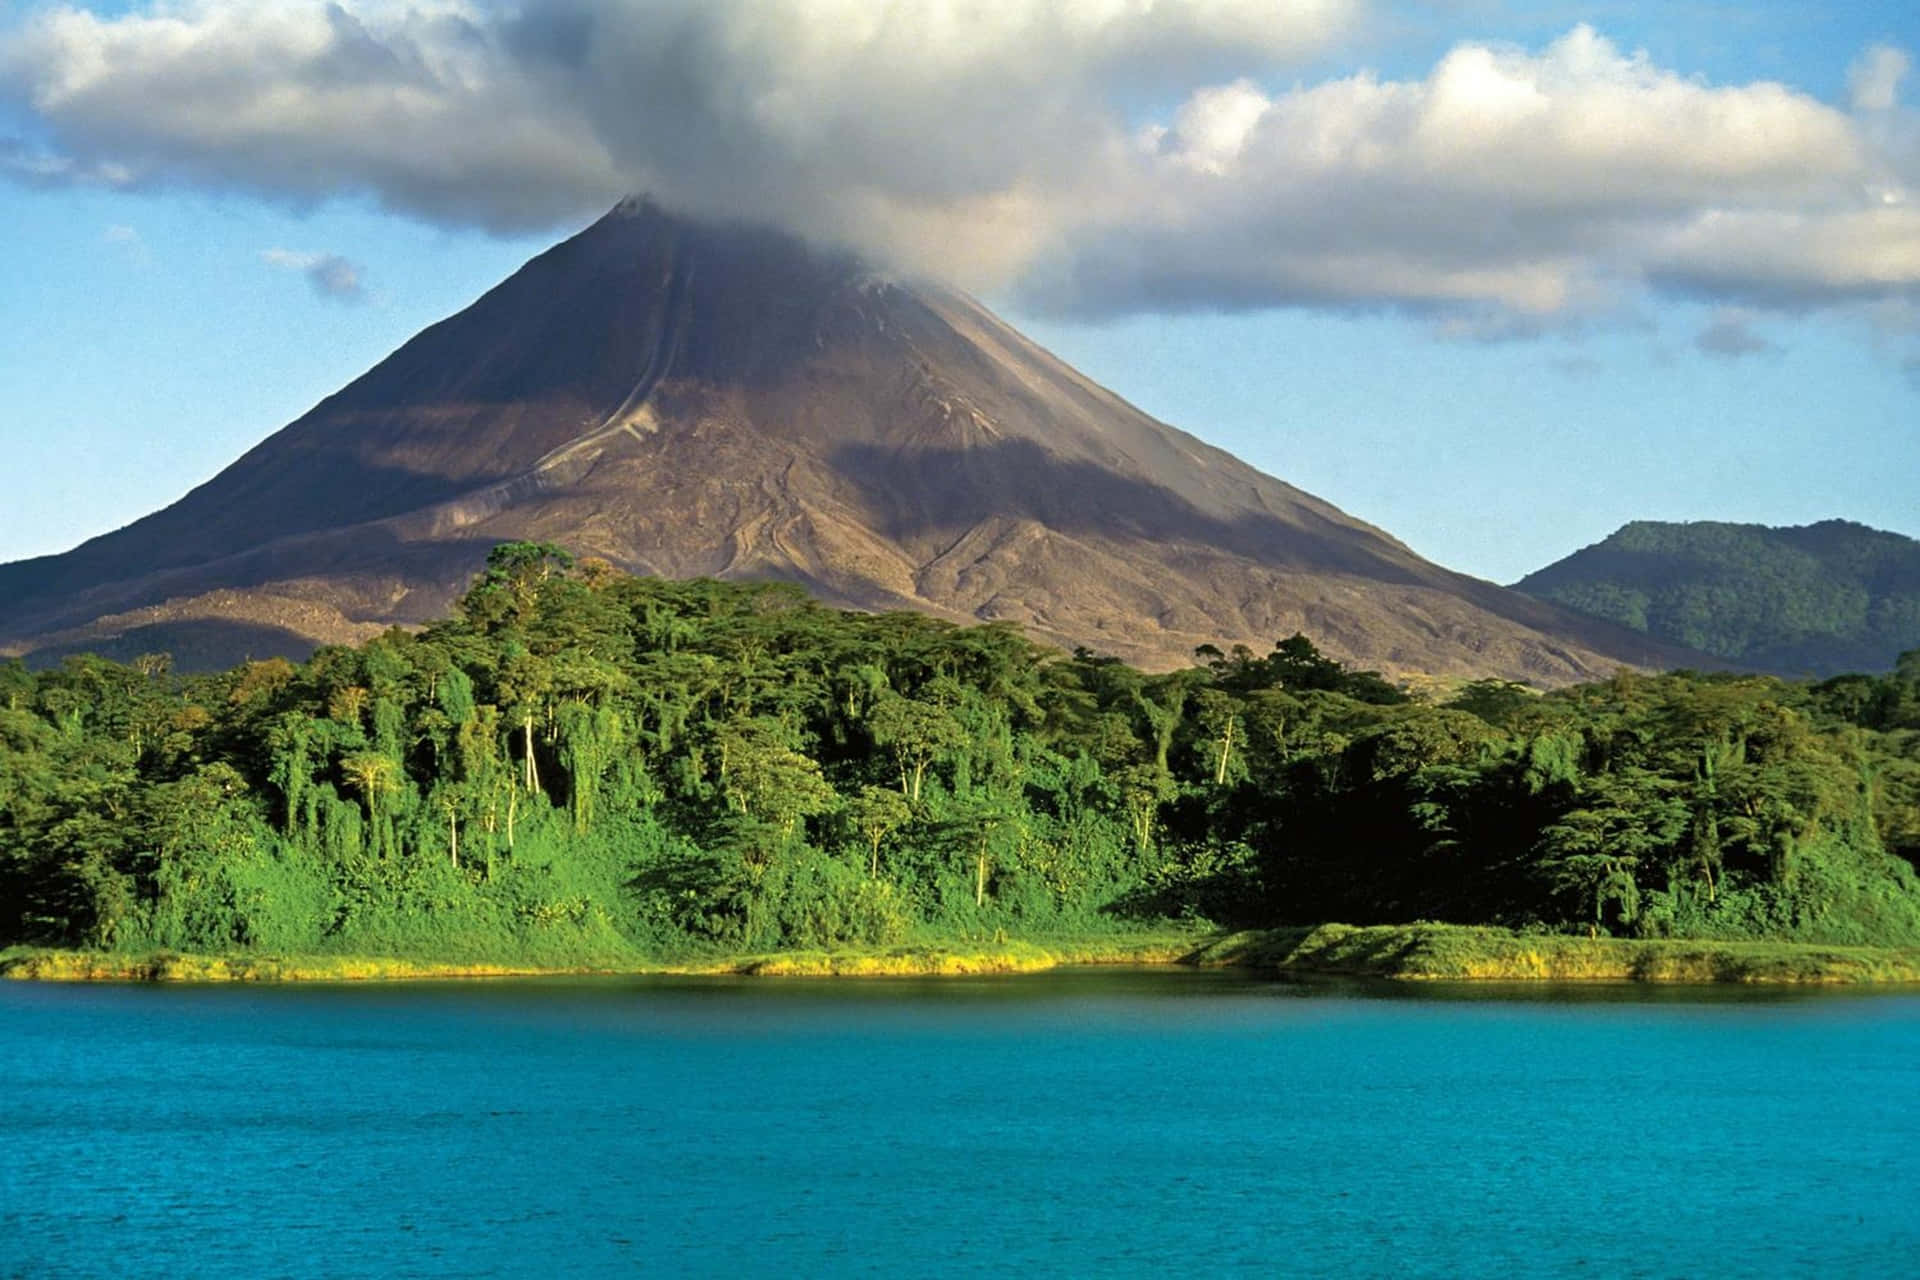 'Explore Nature's Delights in Costa Rica'